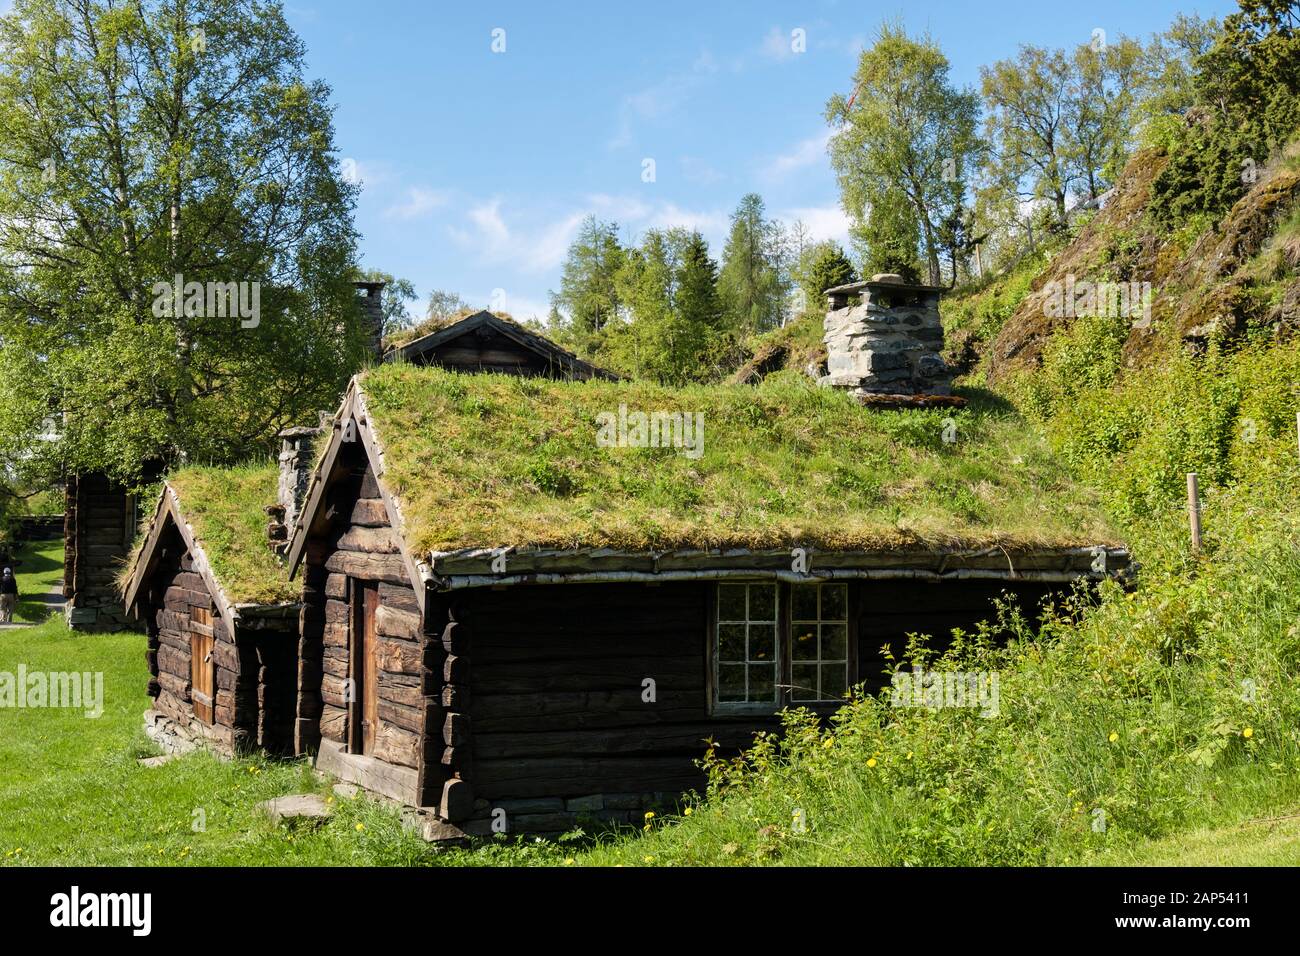 Traditional turf roof log cabins in Sverresborg Trøndelag Folk Museum. Trondheim, Sør-Trøndelag, Norway, Scandinavia Stock Photo